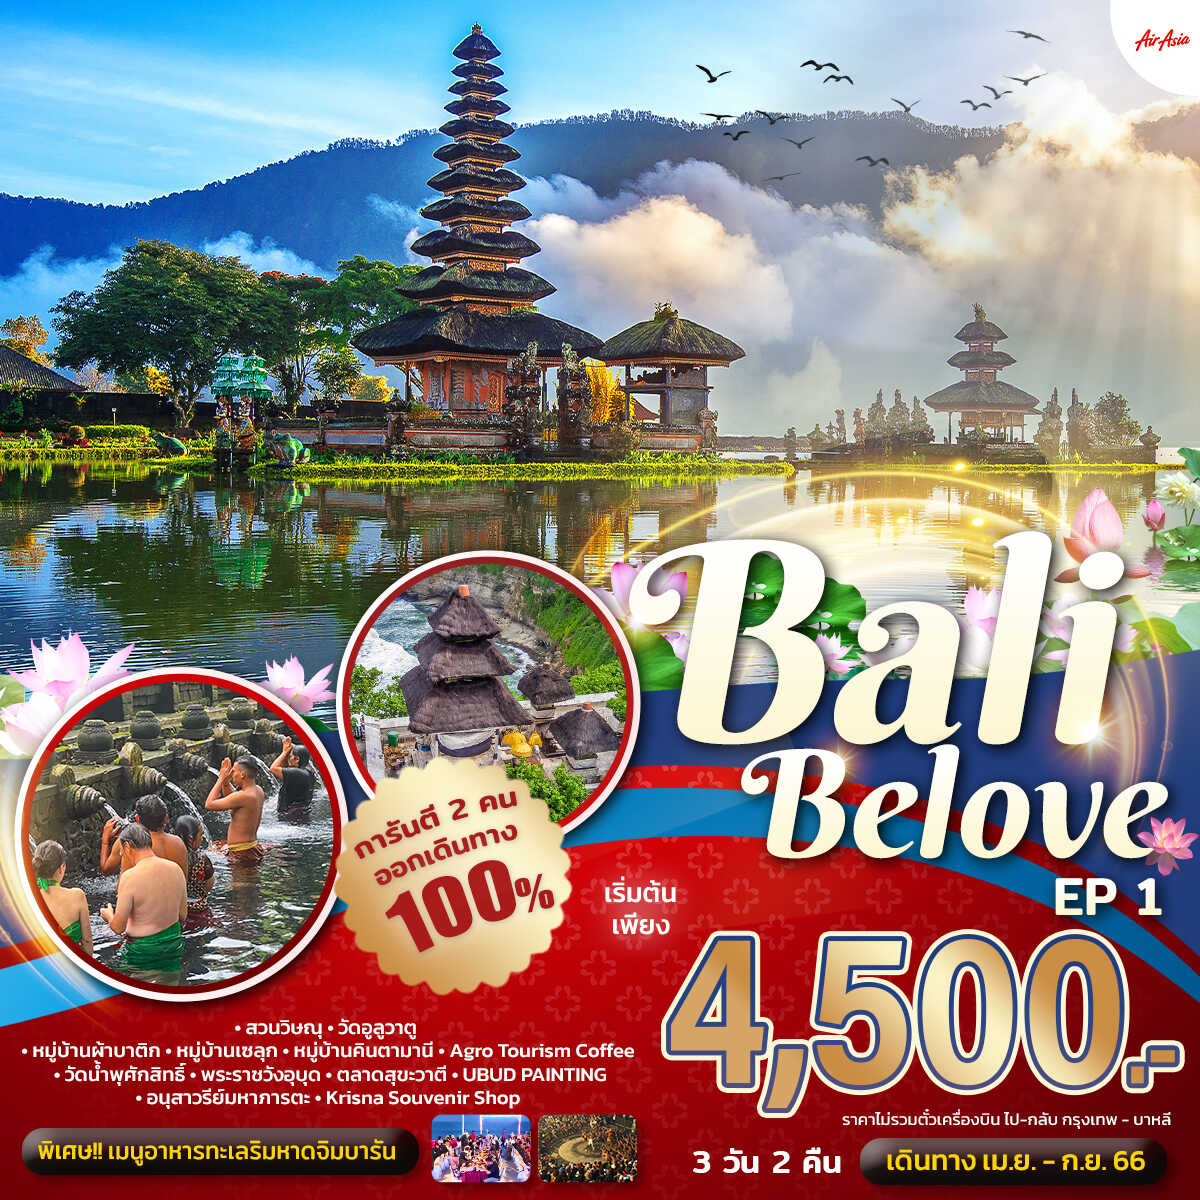 ทัวร์บาหลี Bali Belove EP.1 3 วัน 2 คืน (แพ็คเกจทัวร์ ไม่รวมตั๋วเครื่องบิน)